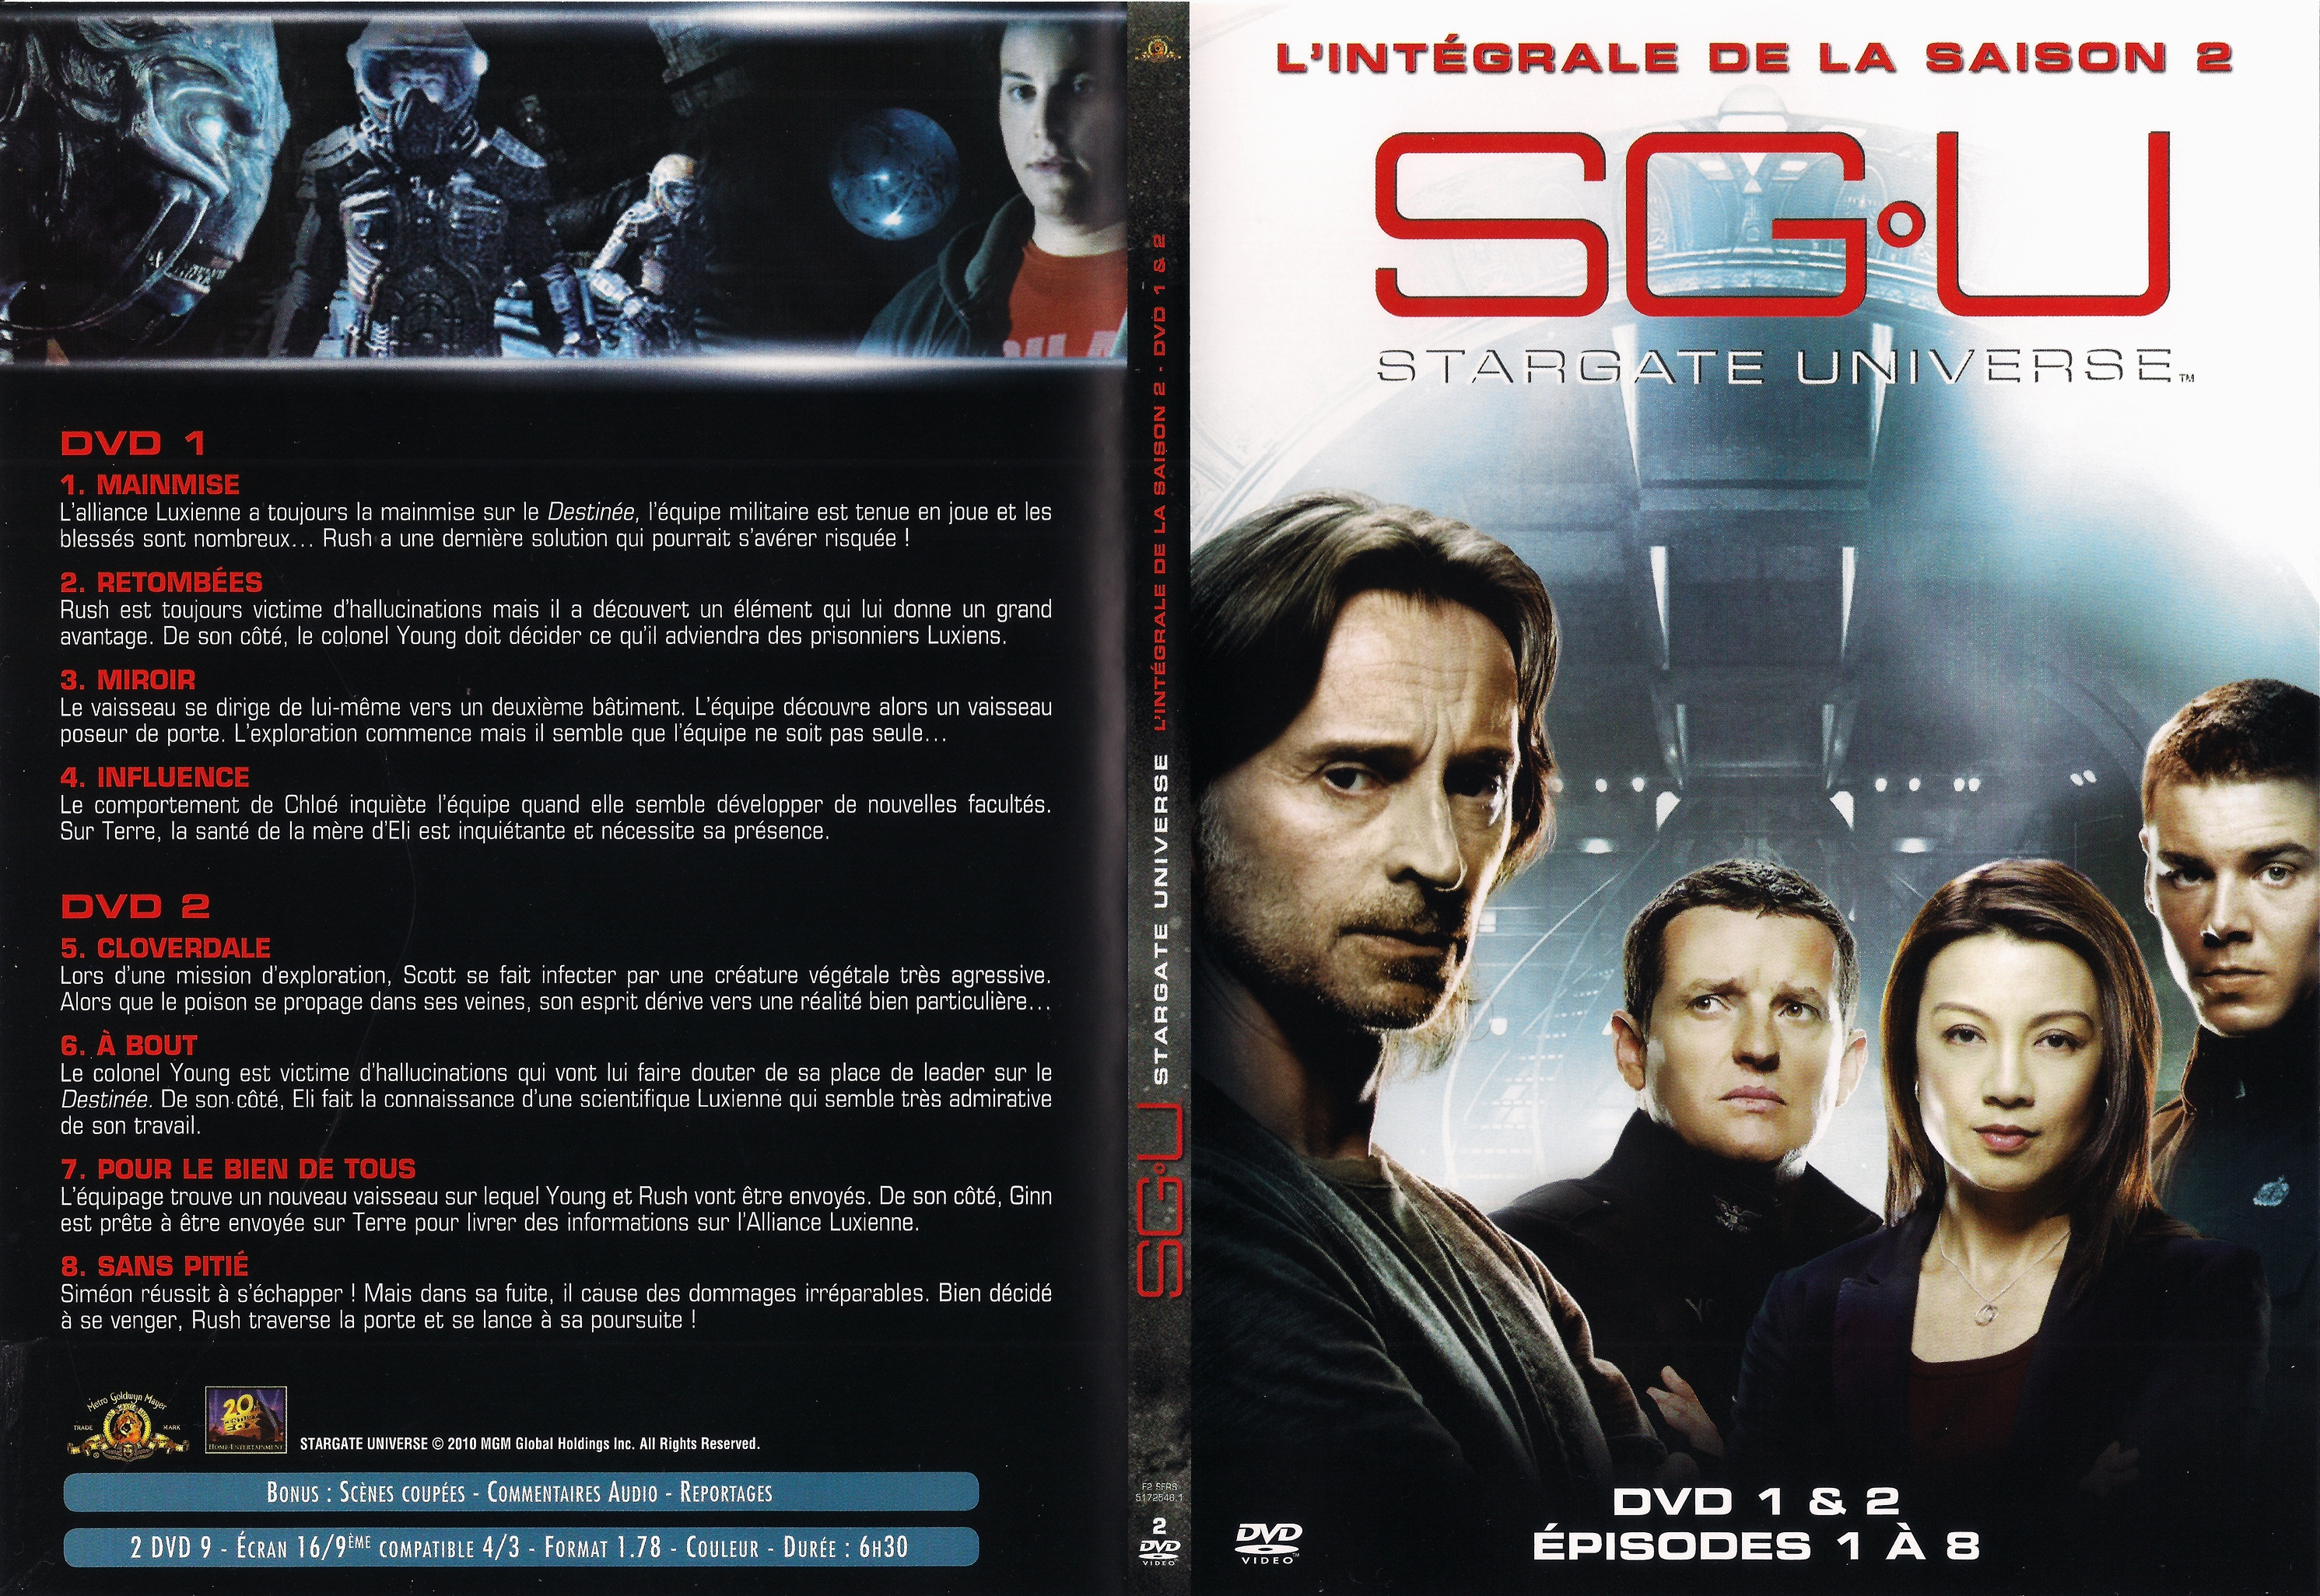 Jaquette DVD Stargate Universe saison 2 DVD 1